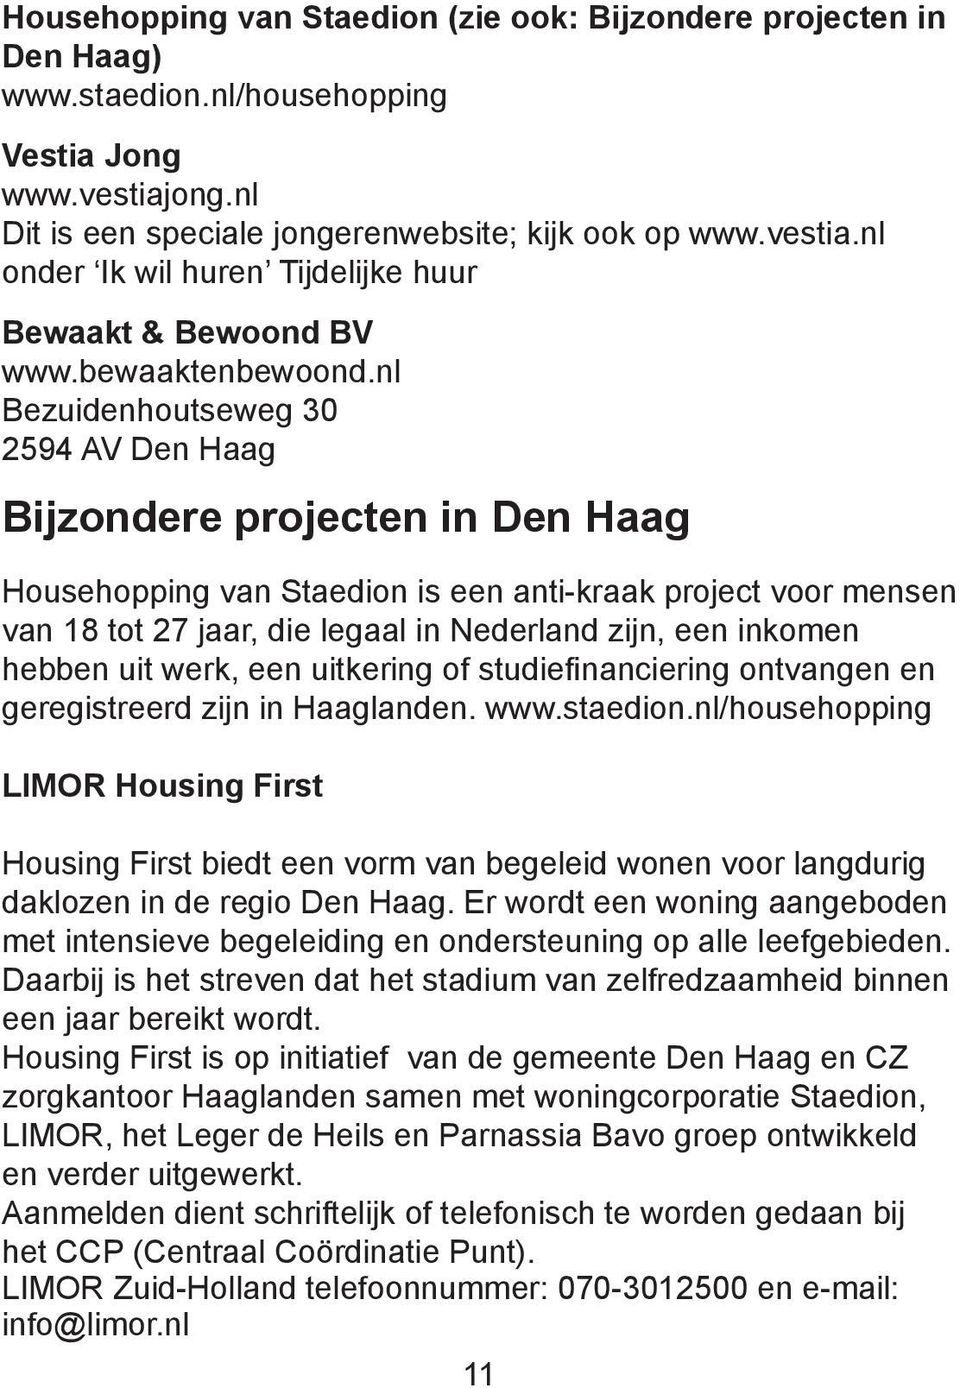 nl Bezuidenhoutseweg 30 2594 AV Den Haag Bijzondere projecten in Den Haag Househopping van Staedion is een anti-kraak project voor mensen van 18 tot 27 jaar, die legaal in Nederland zijn, een inkomen